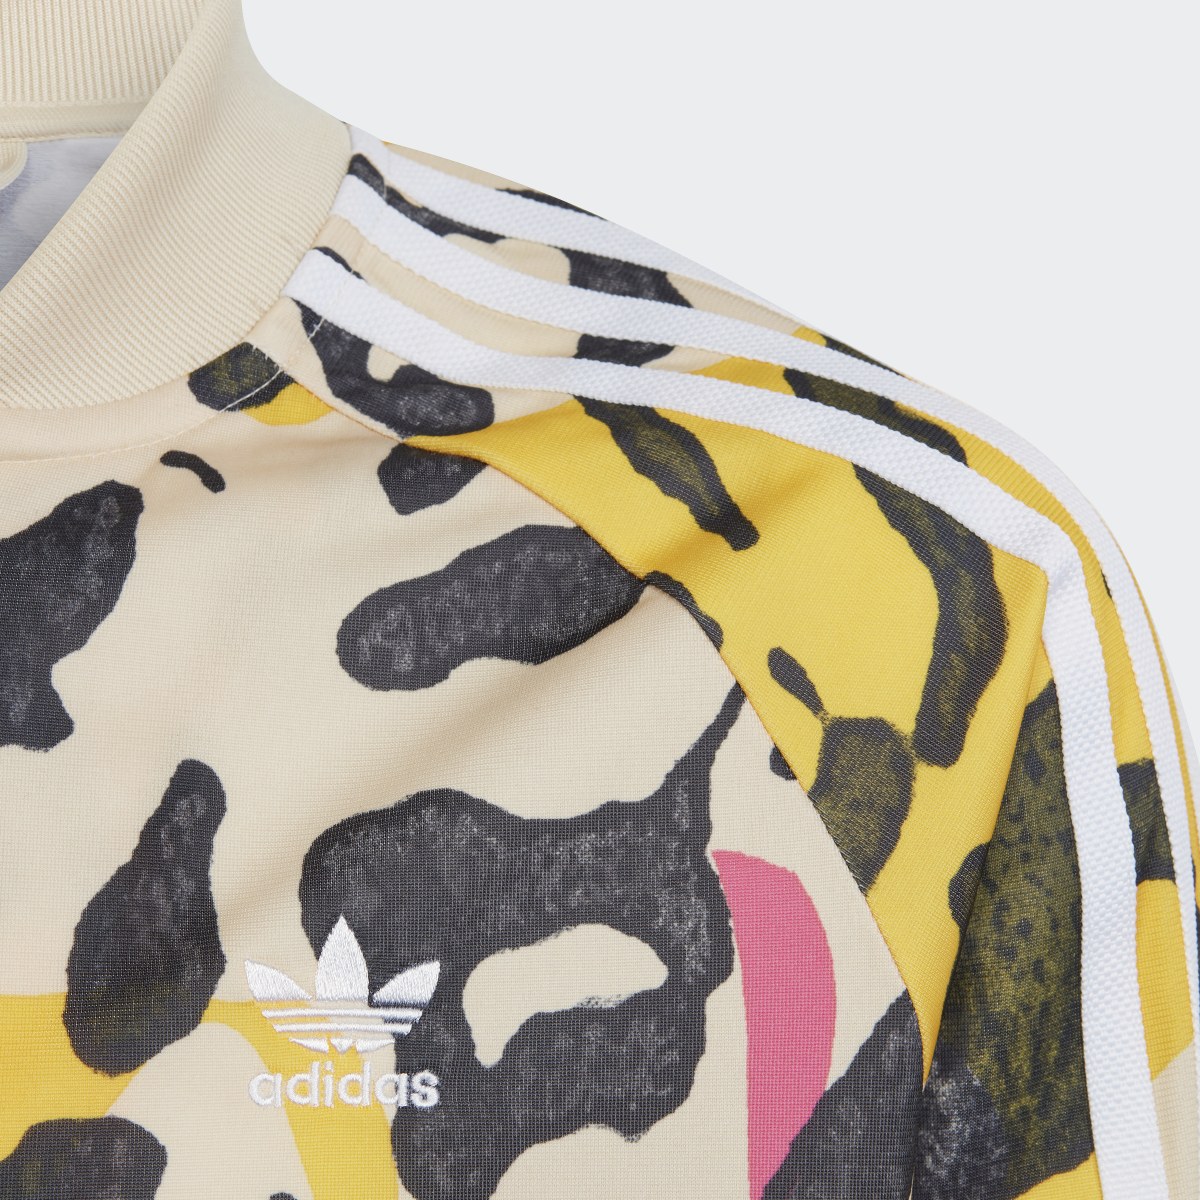 Adidas Animal Print SST Track Jacket. 5